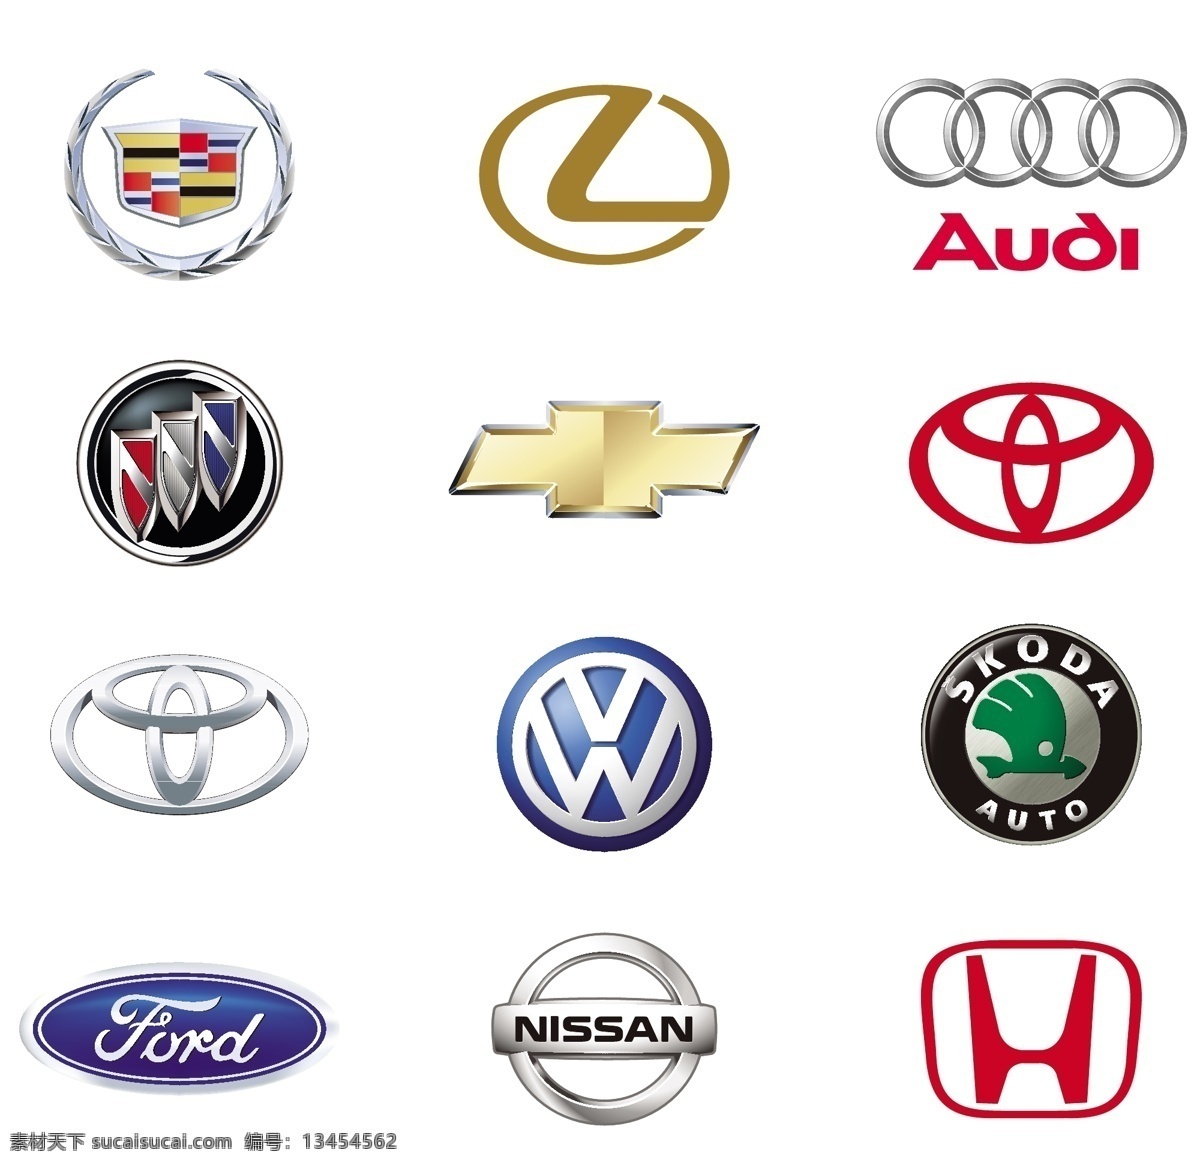 汽车品牌标志 汽车品牌 汽车标志 标志 logo 共享设计矢量 标志图标 企业